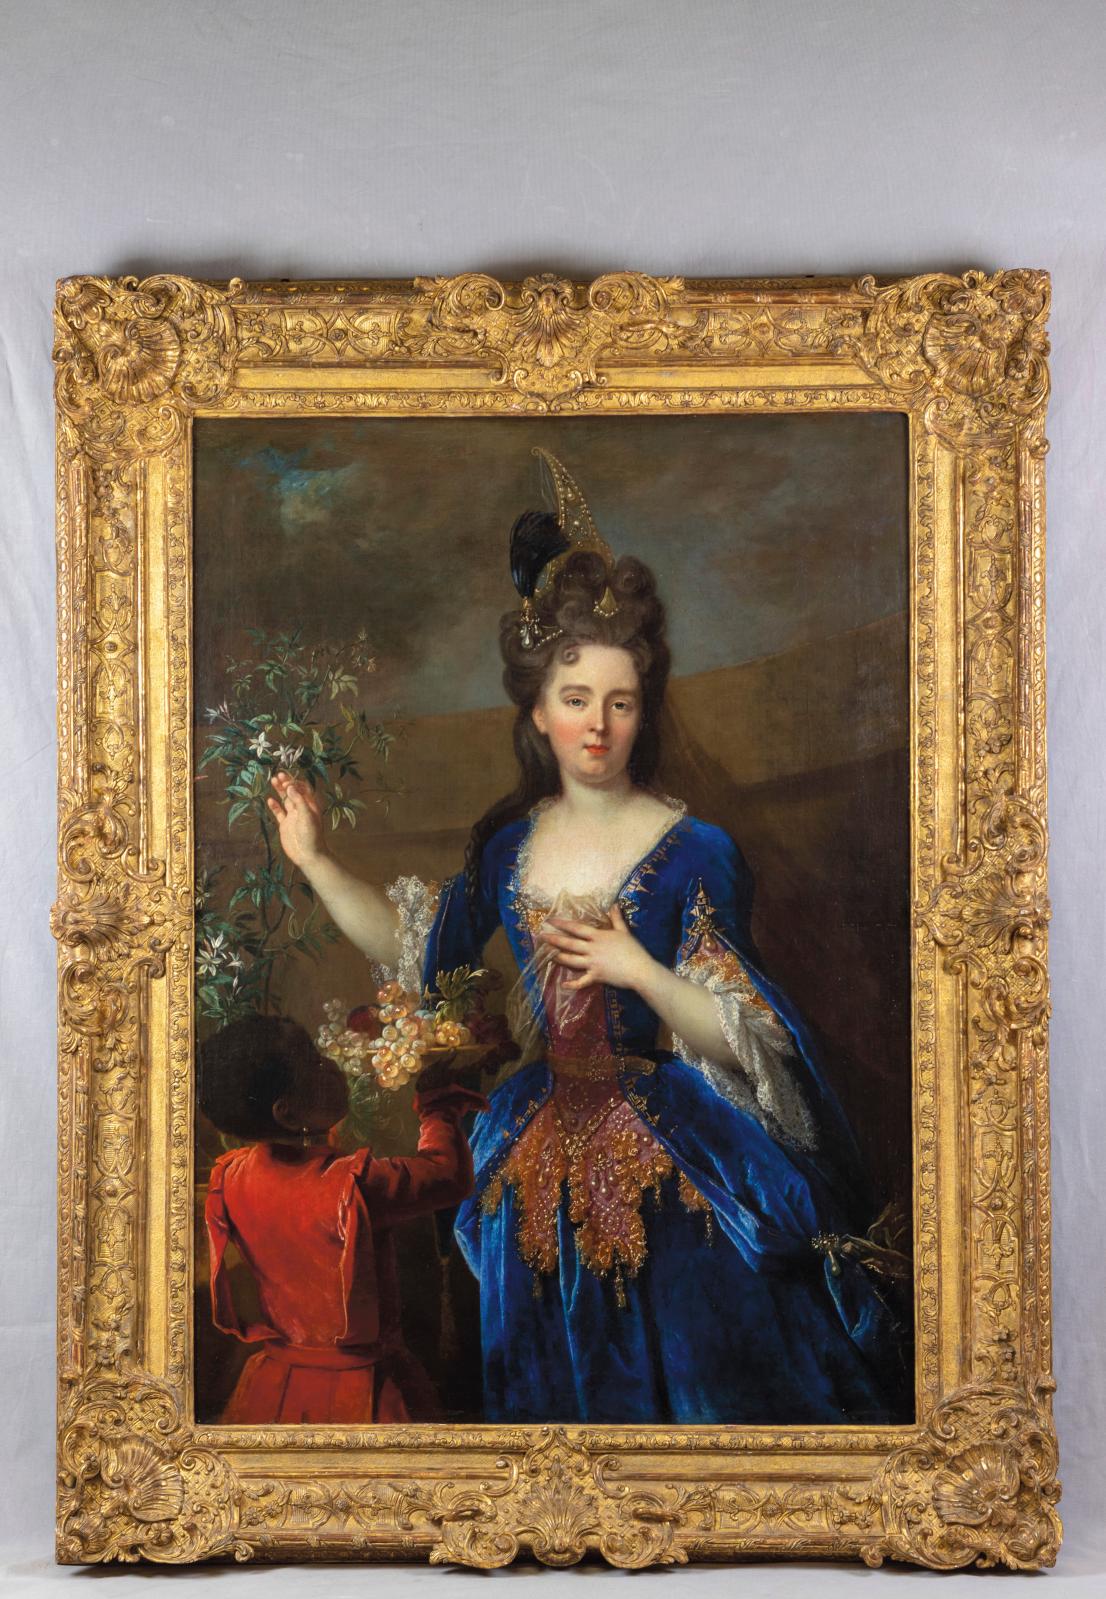 La dame au jasmin, le portrait d'une jeune aristocrate par Nicolas de Largilliere